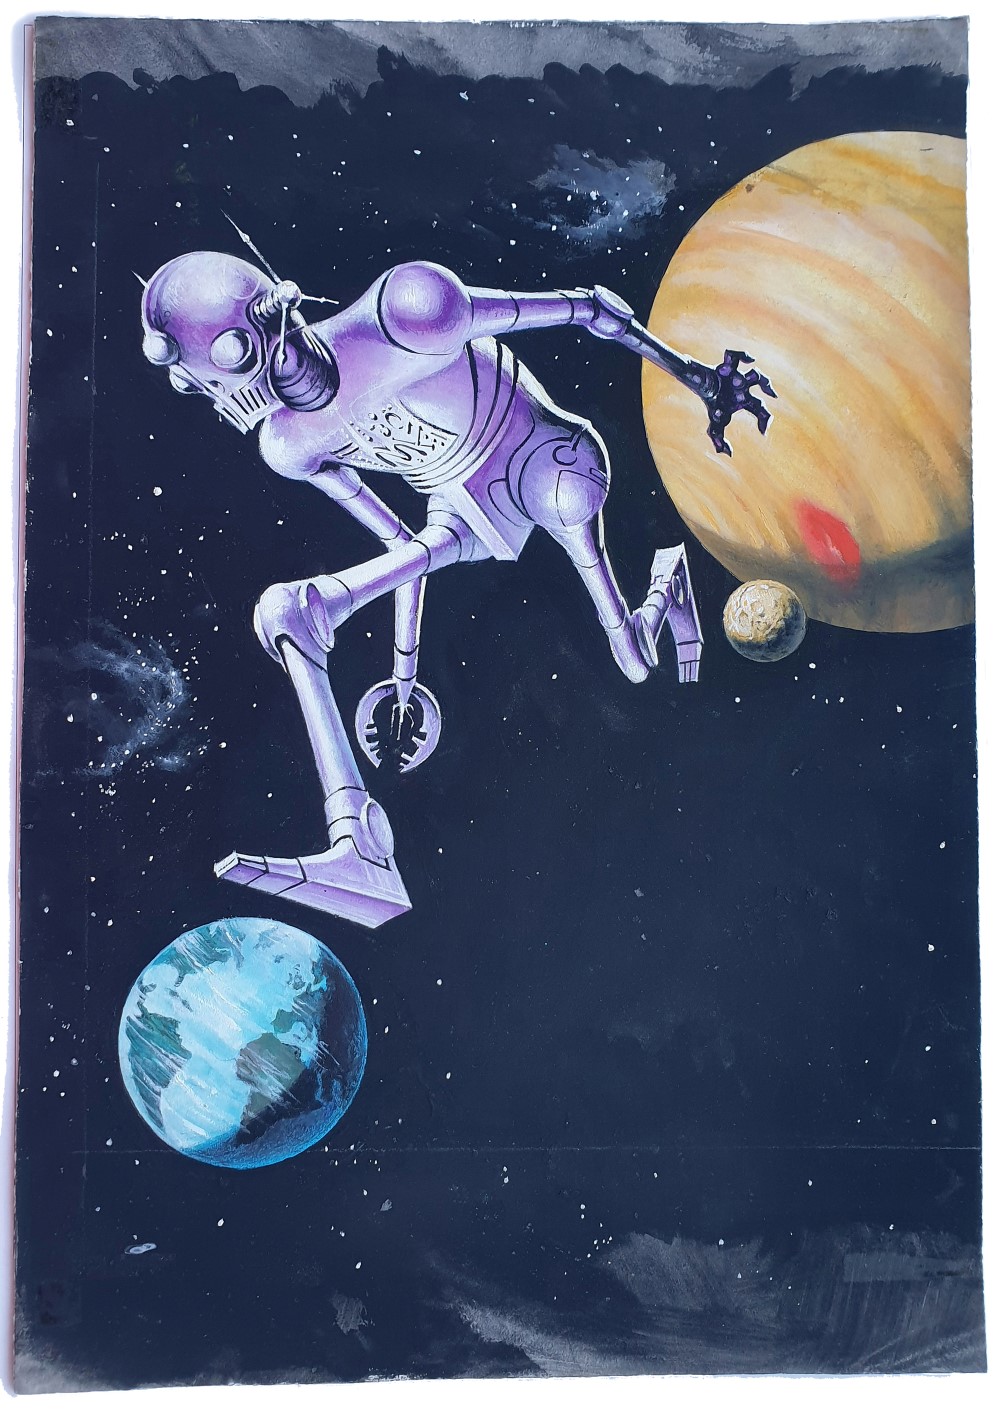 Utopia Taschenbuch 297, Erich Pabel Verlag 1967, Lester Del Rey: Der unschuldige Roboter, The Runaway Robot, Cover: Rudolf Sieber-Lonati